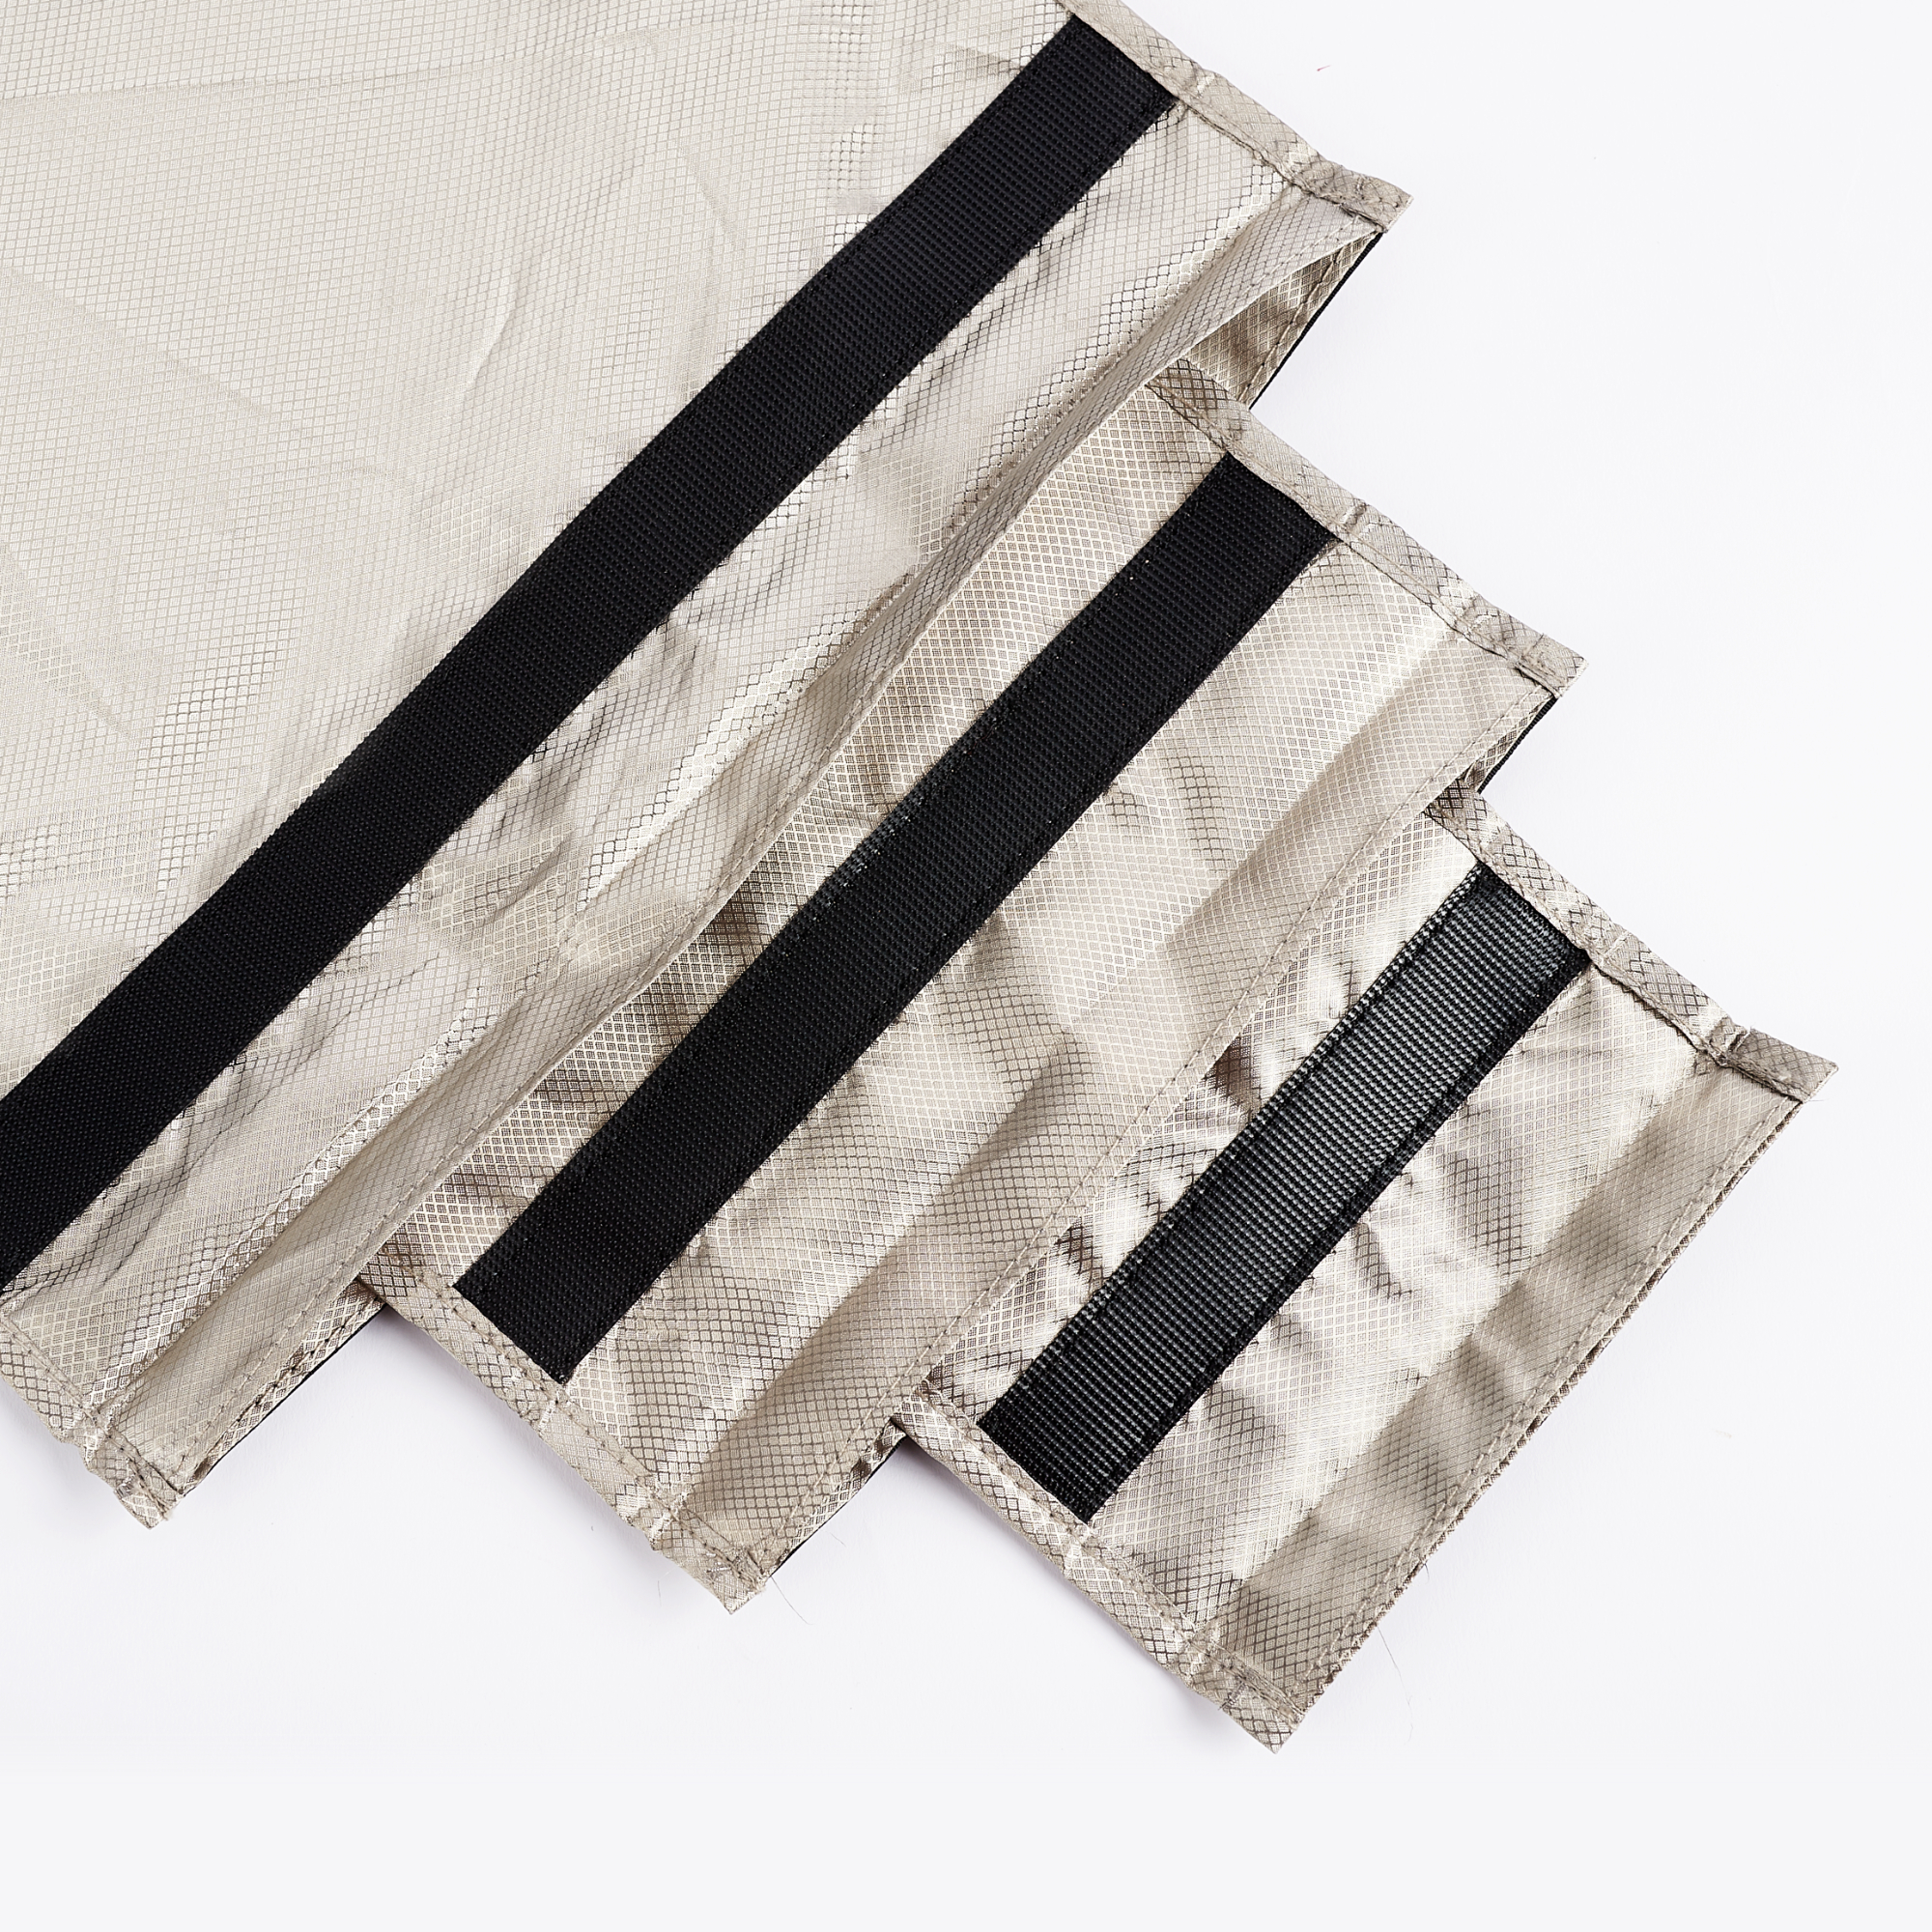 CYBER NC-BLACK Faraday Fabric EMF RF Shielding Black Fabric Roll